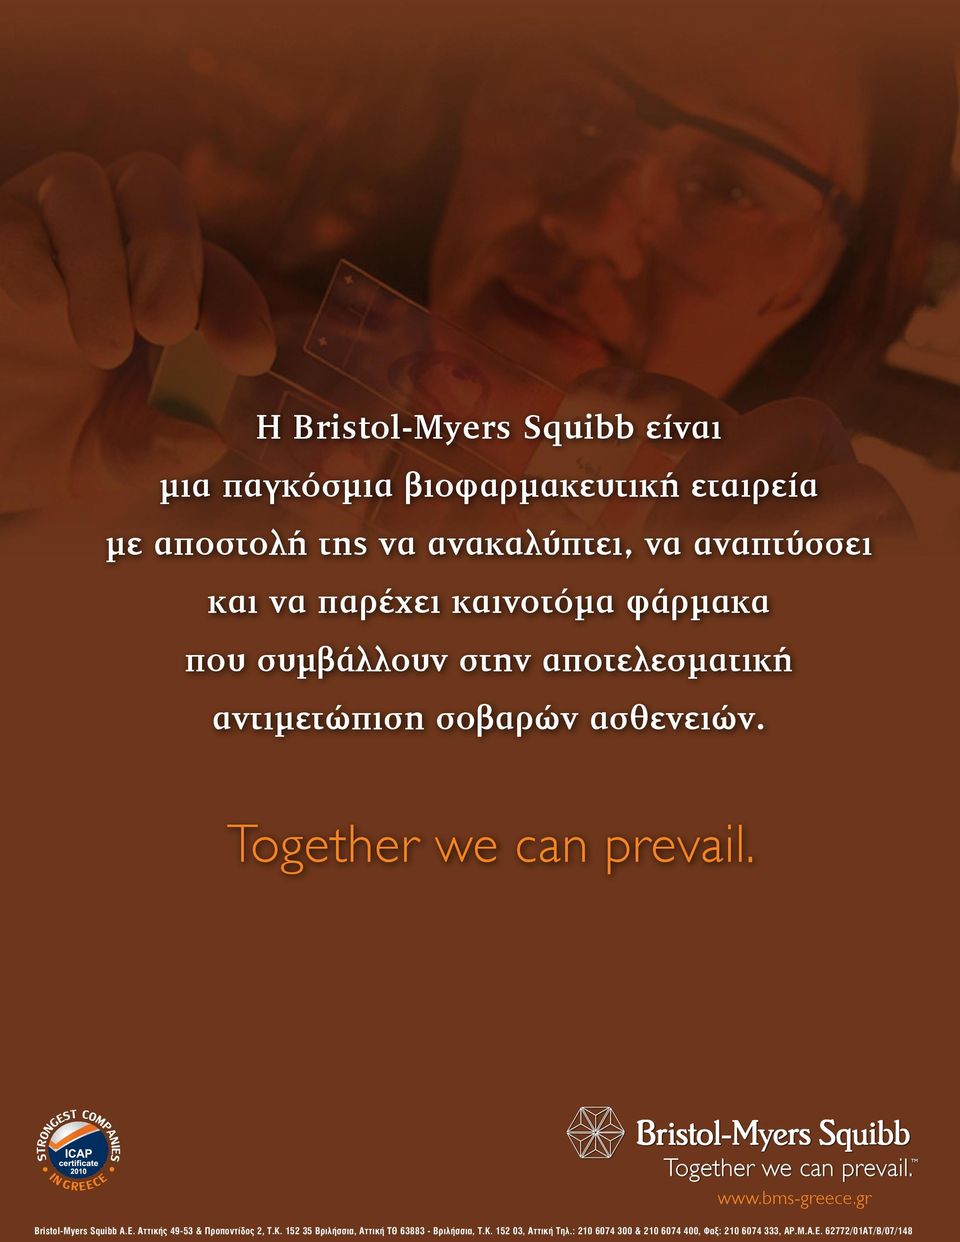 ασθενειών. αντιµετώπιση σοβαρών ασθενειών. Together we can prevail. Together we can prevail. Together we can prevail. www.bms-greece.gr Together we can prevail. Bristol-Myers Squibb A.E.